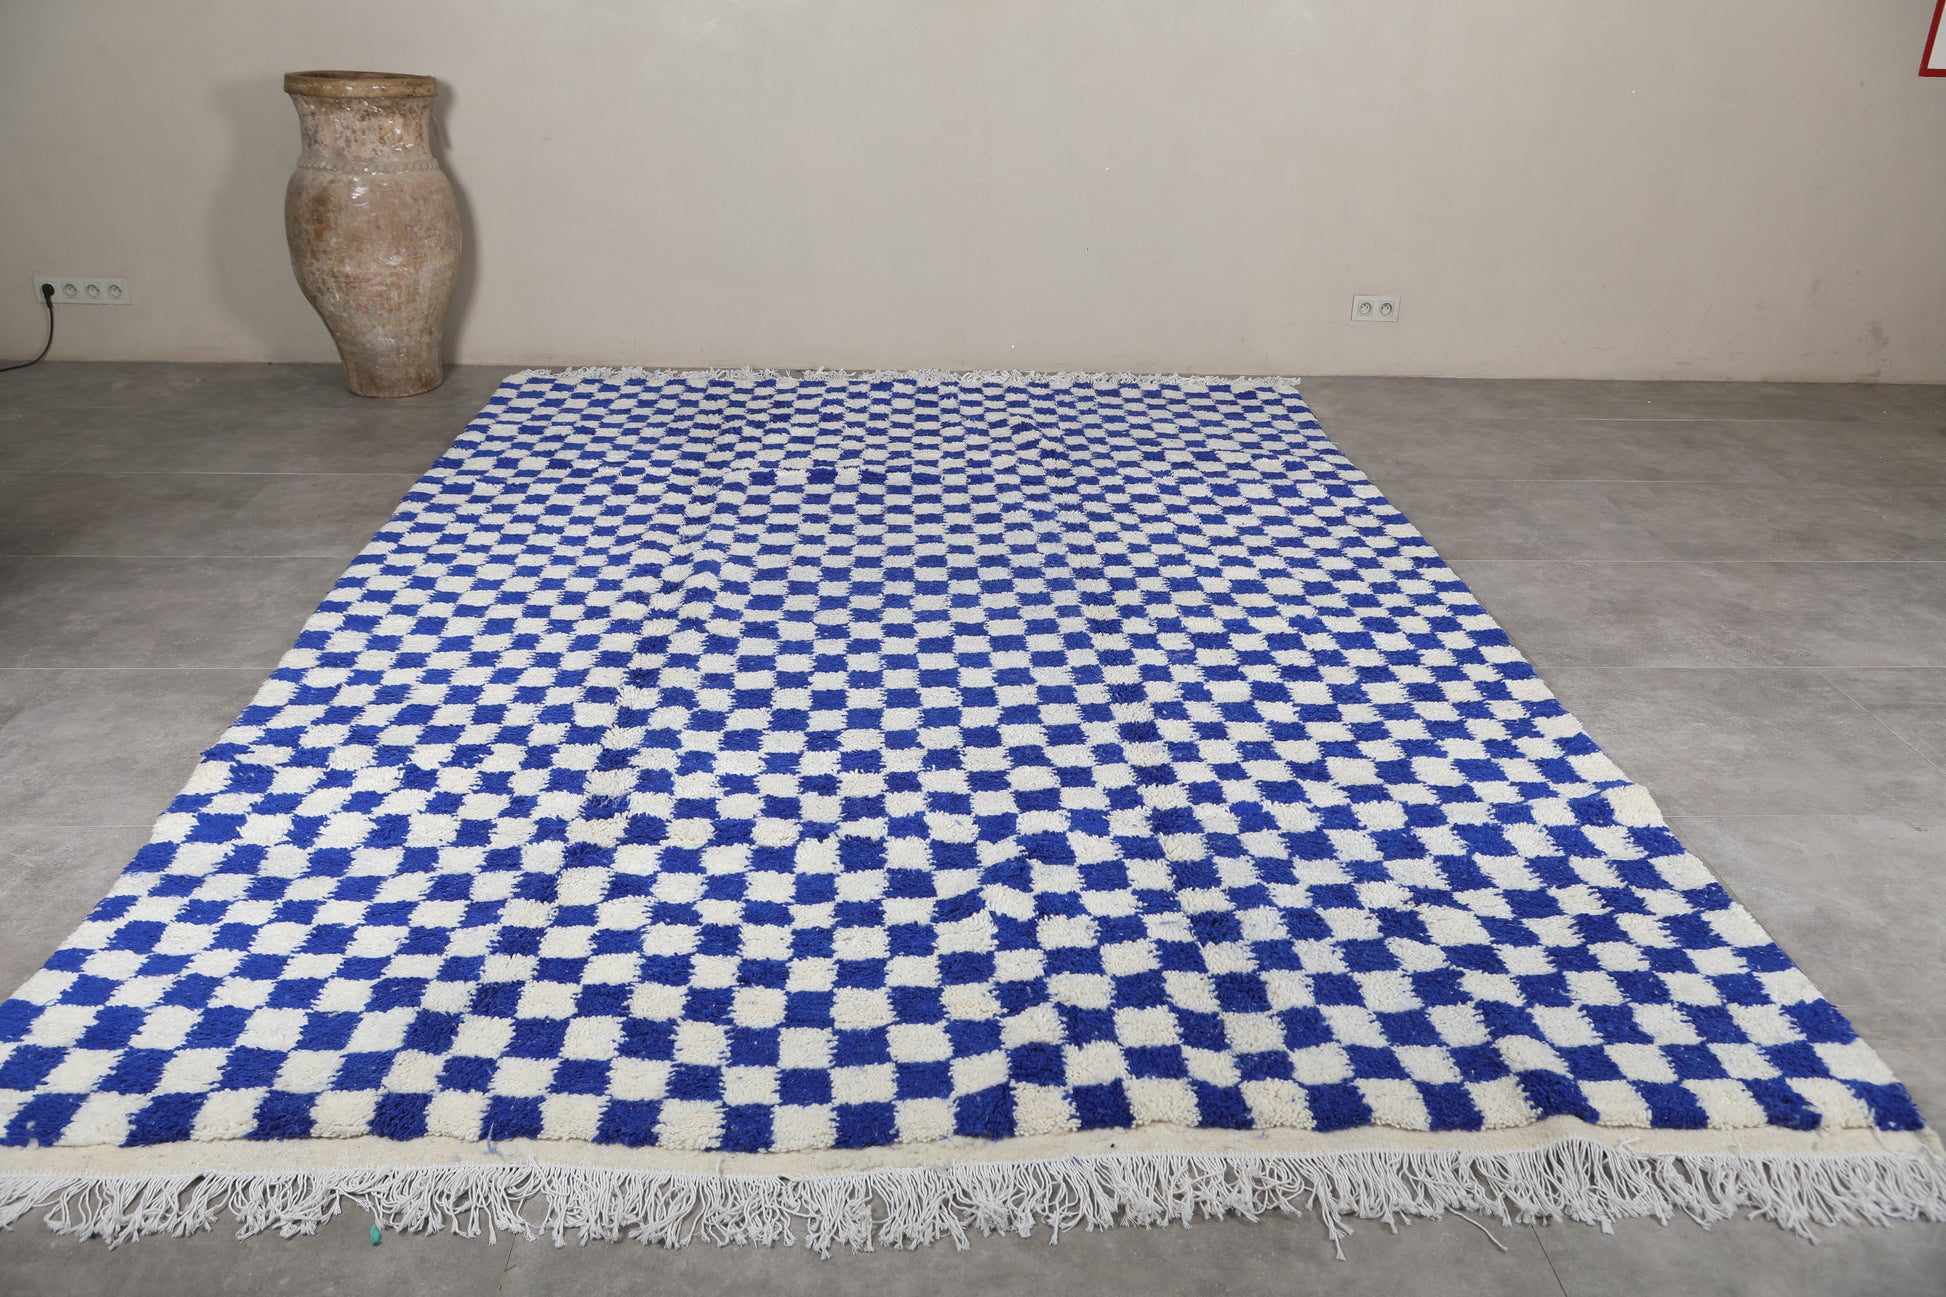 Moroccan rug 8.4 X 11.5 Feet - Beni ourain rugs